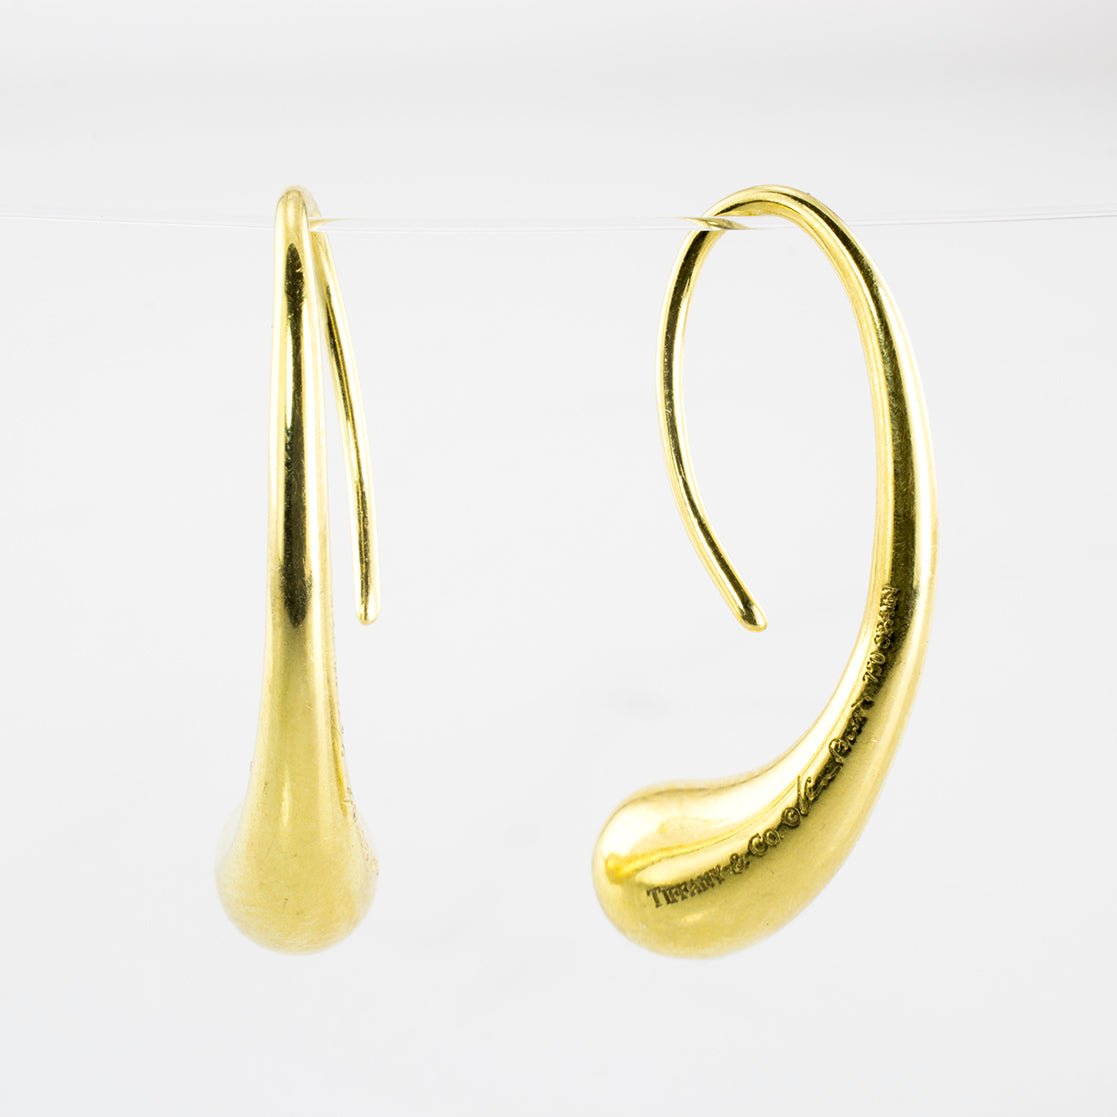 'Tiffany & Co.' Elsa Peretti Teardrop Earrings - 100 Ways